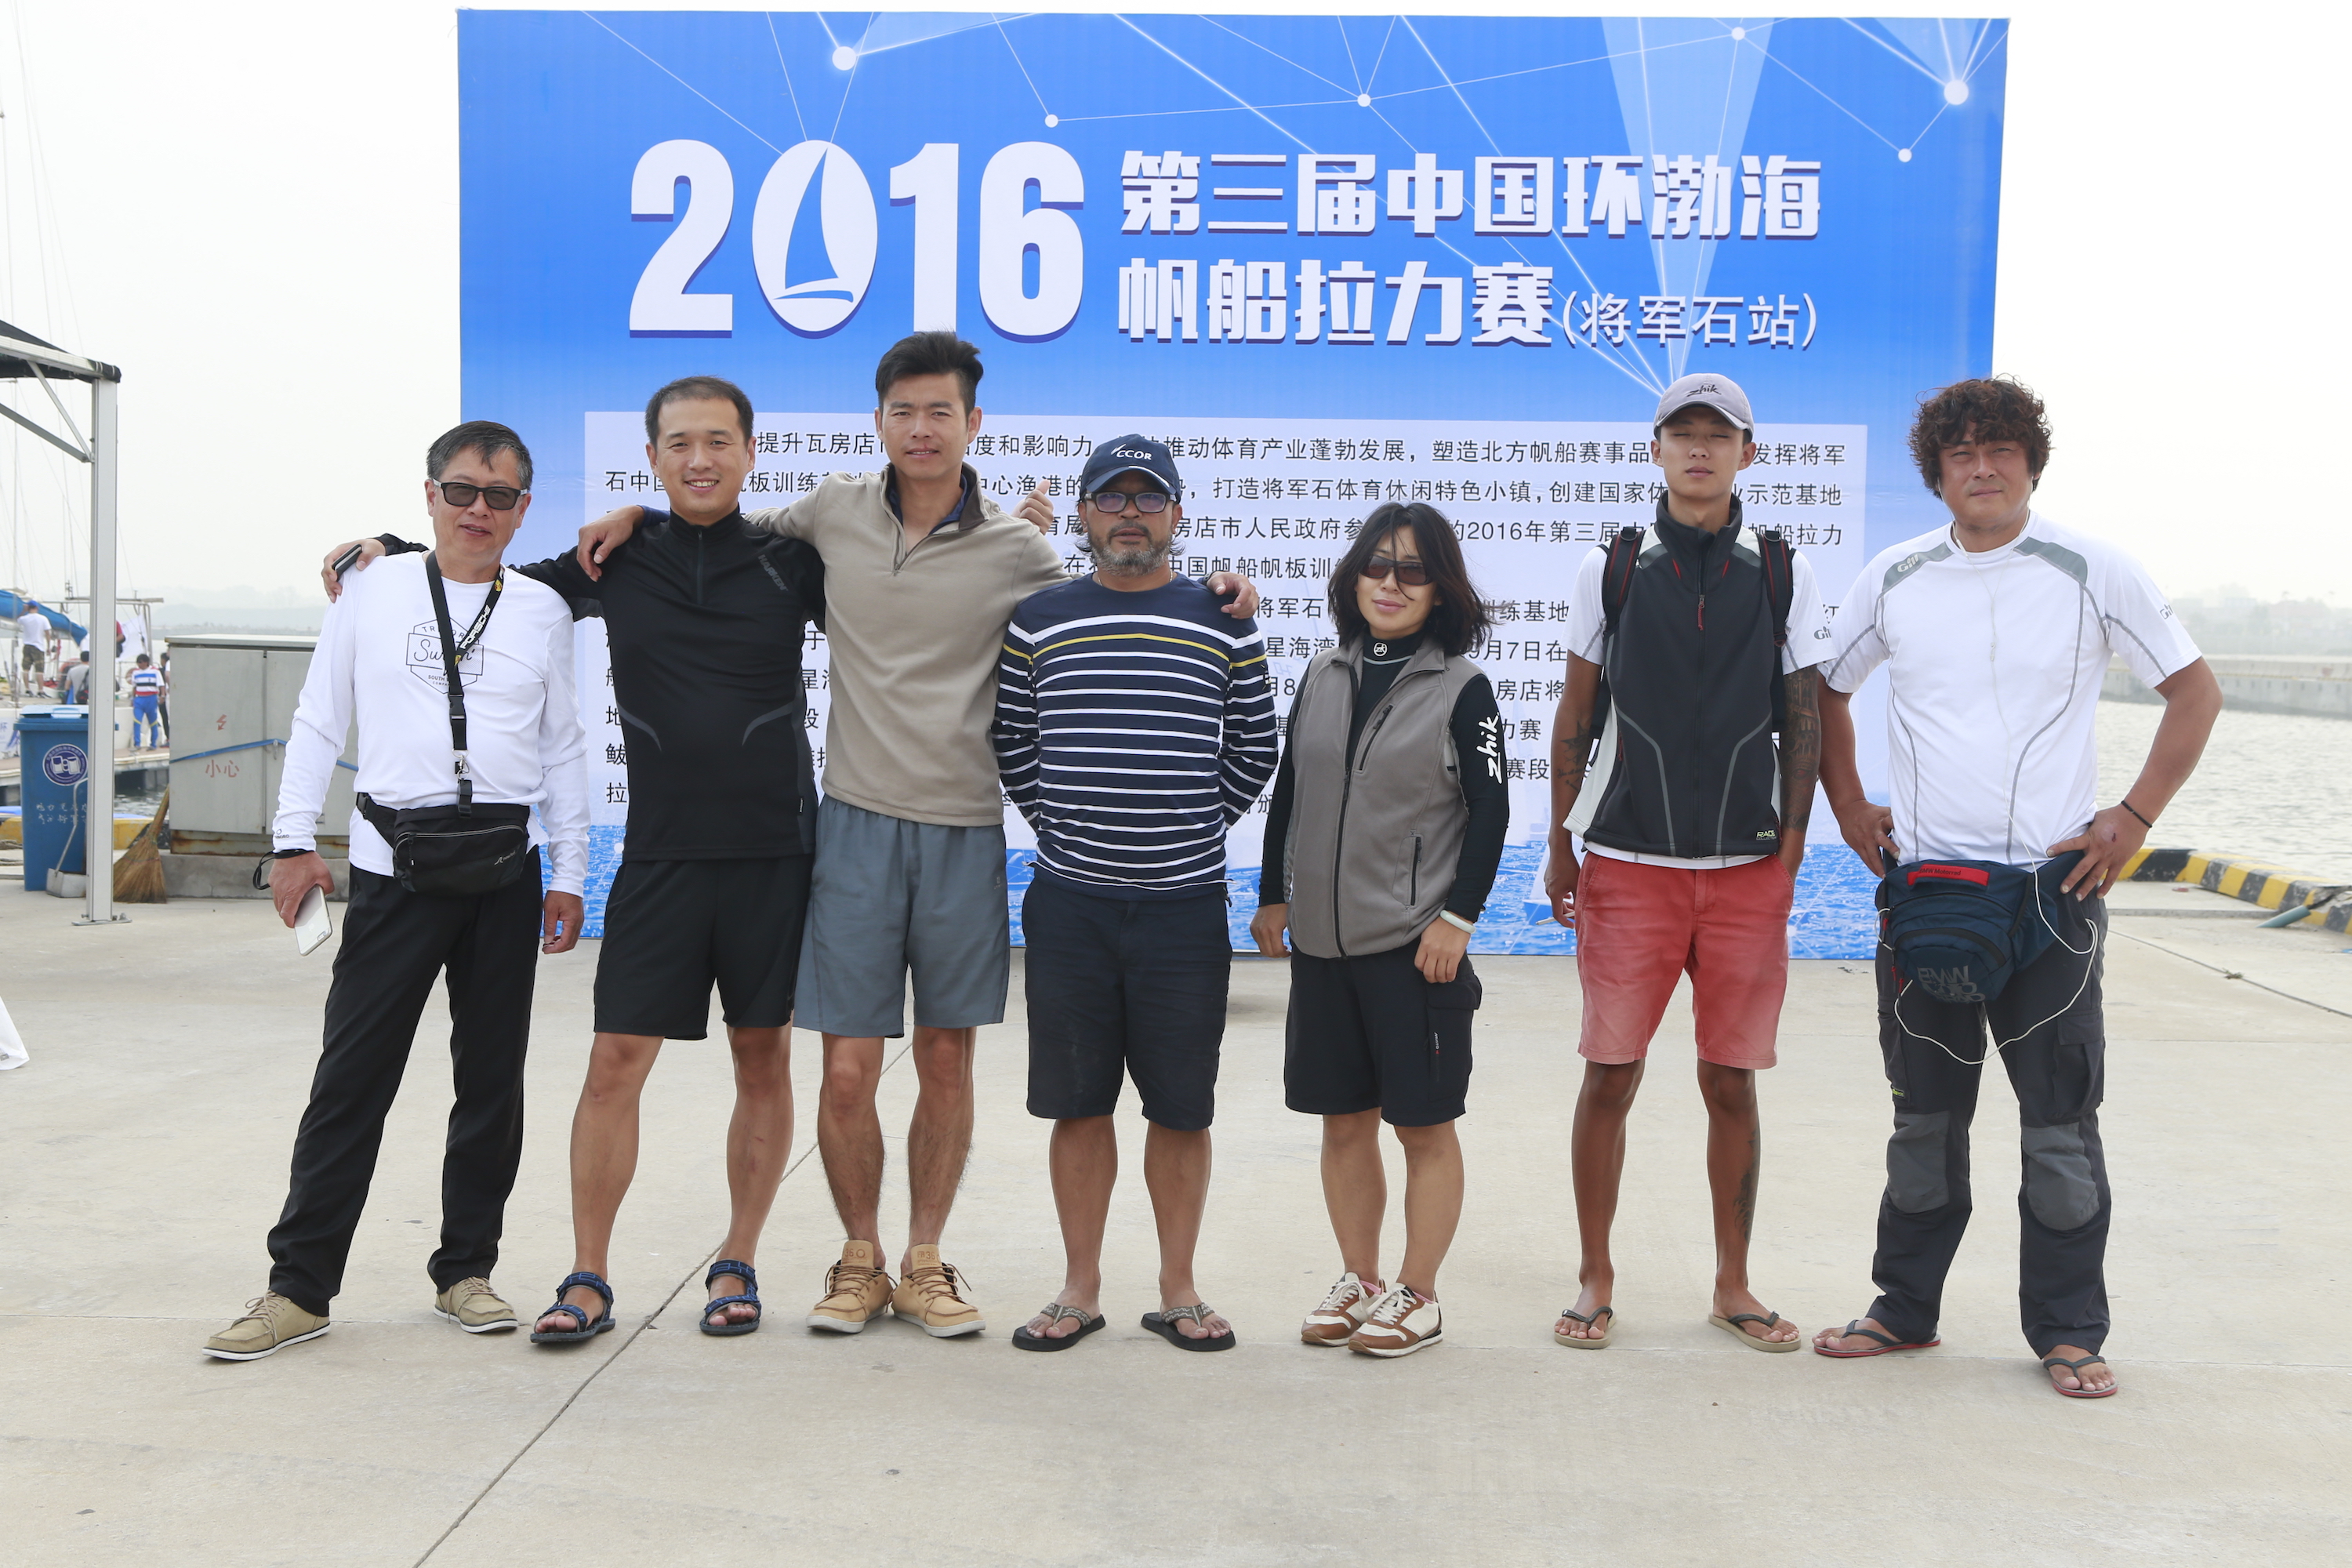 我要航海网千航帆船队2016环渤海杯帆船拉力赛_MG_8534.JPG